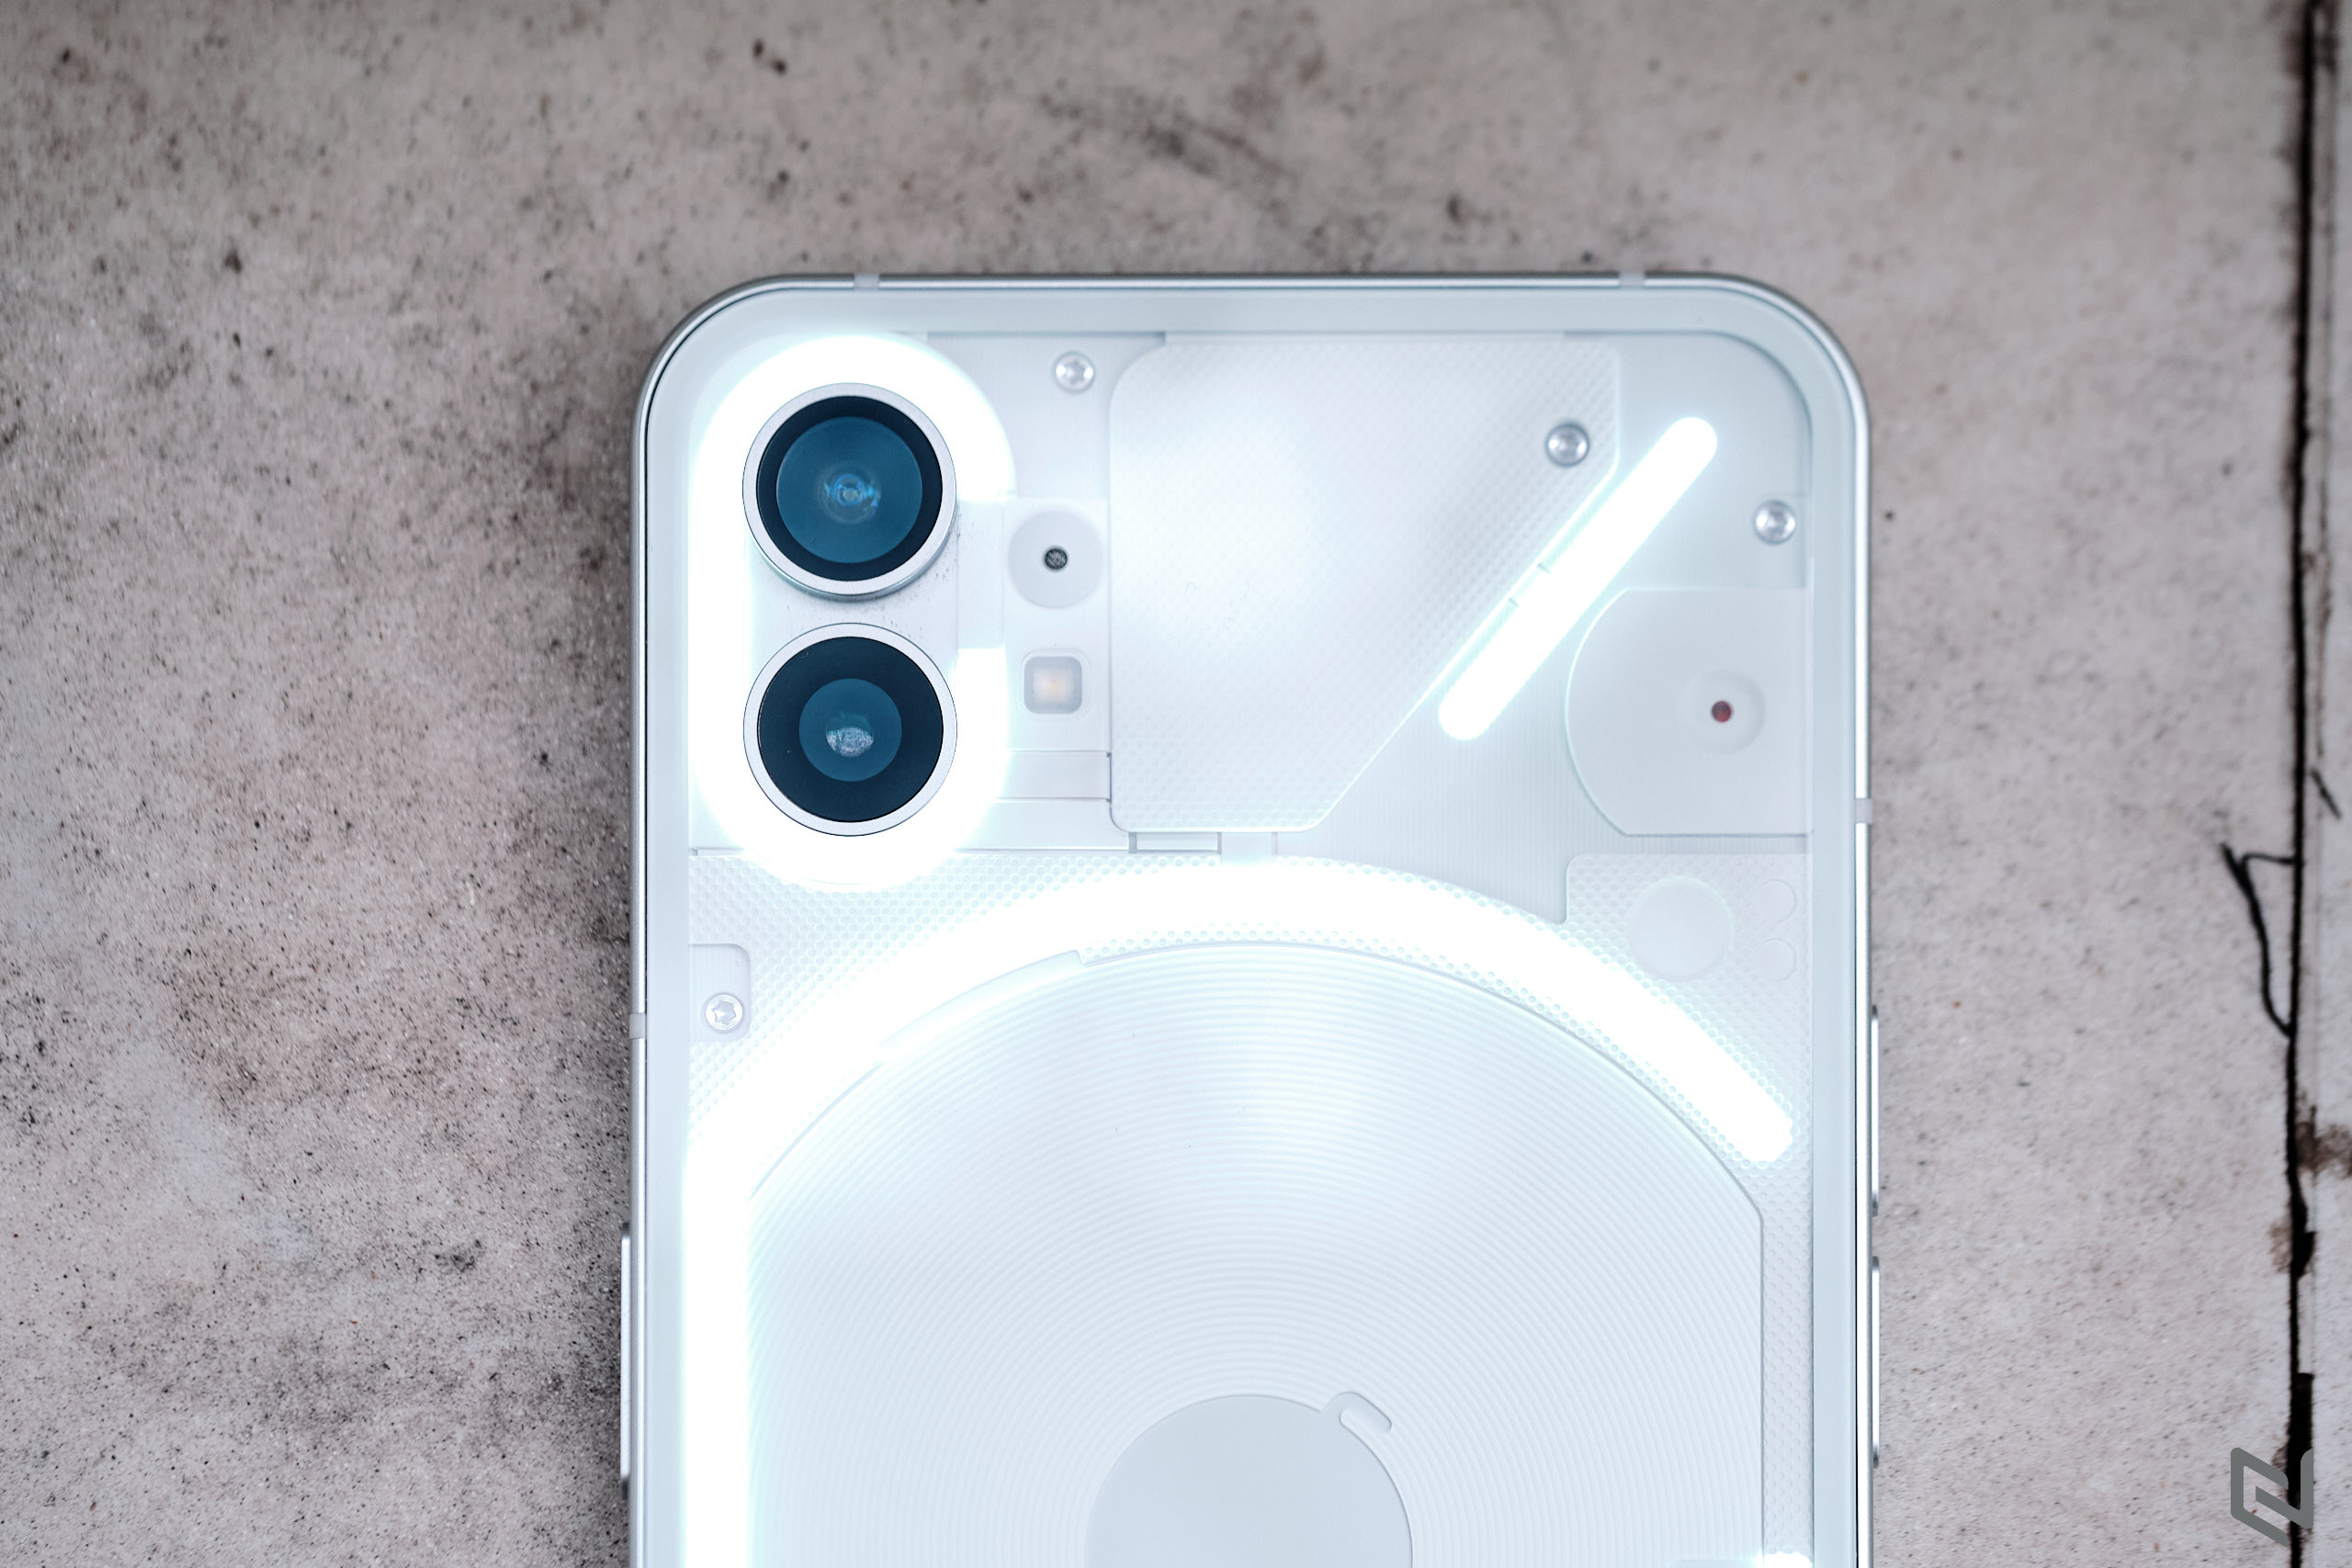 Trên tay Nothing Phone 1: Mặt lưng ấn tượng, thiết kế đẹp, cấu hình tầm trung